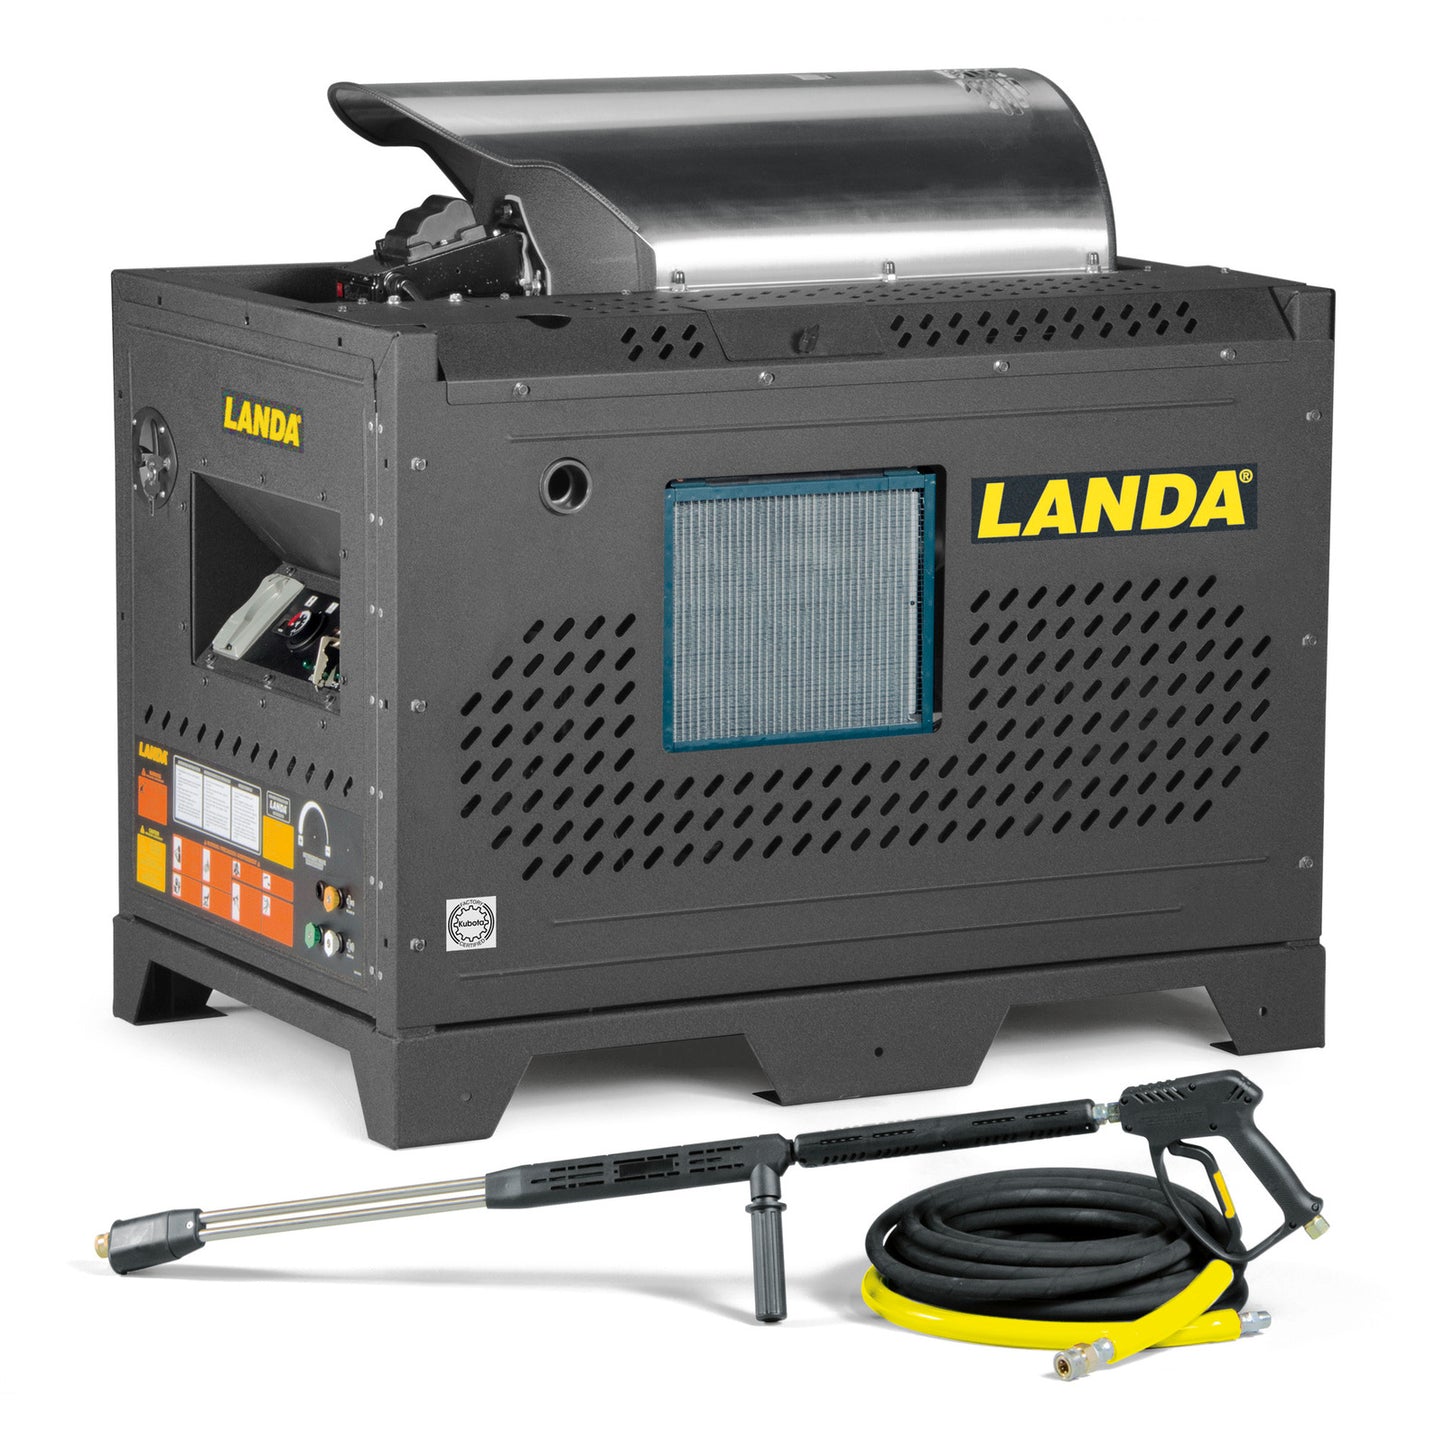 Landa PDHW Series Hot Water Pressure Washer